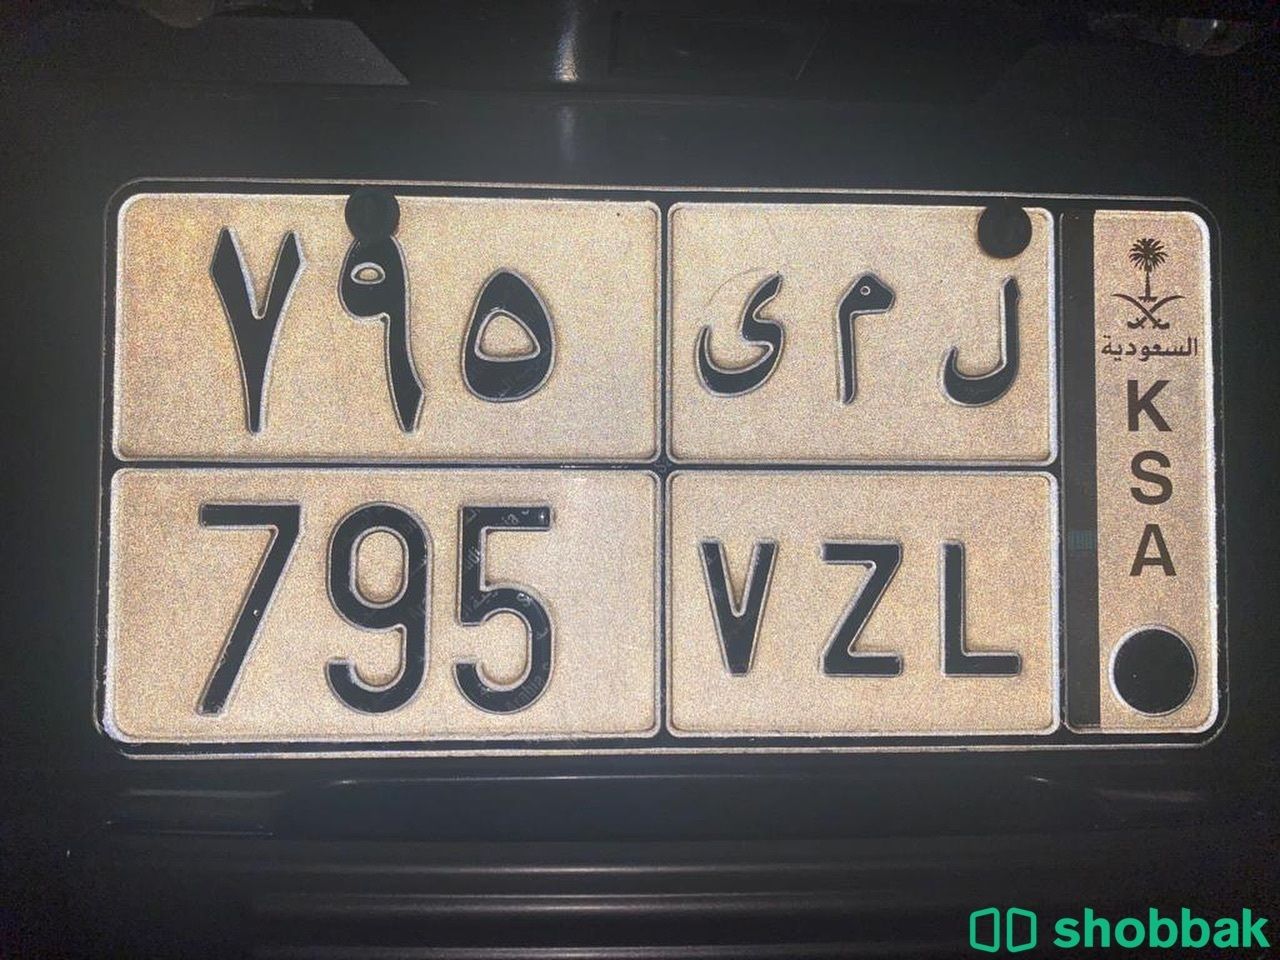 لوحة سيارة ل م ى شباك السعودية